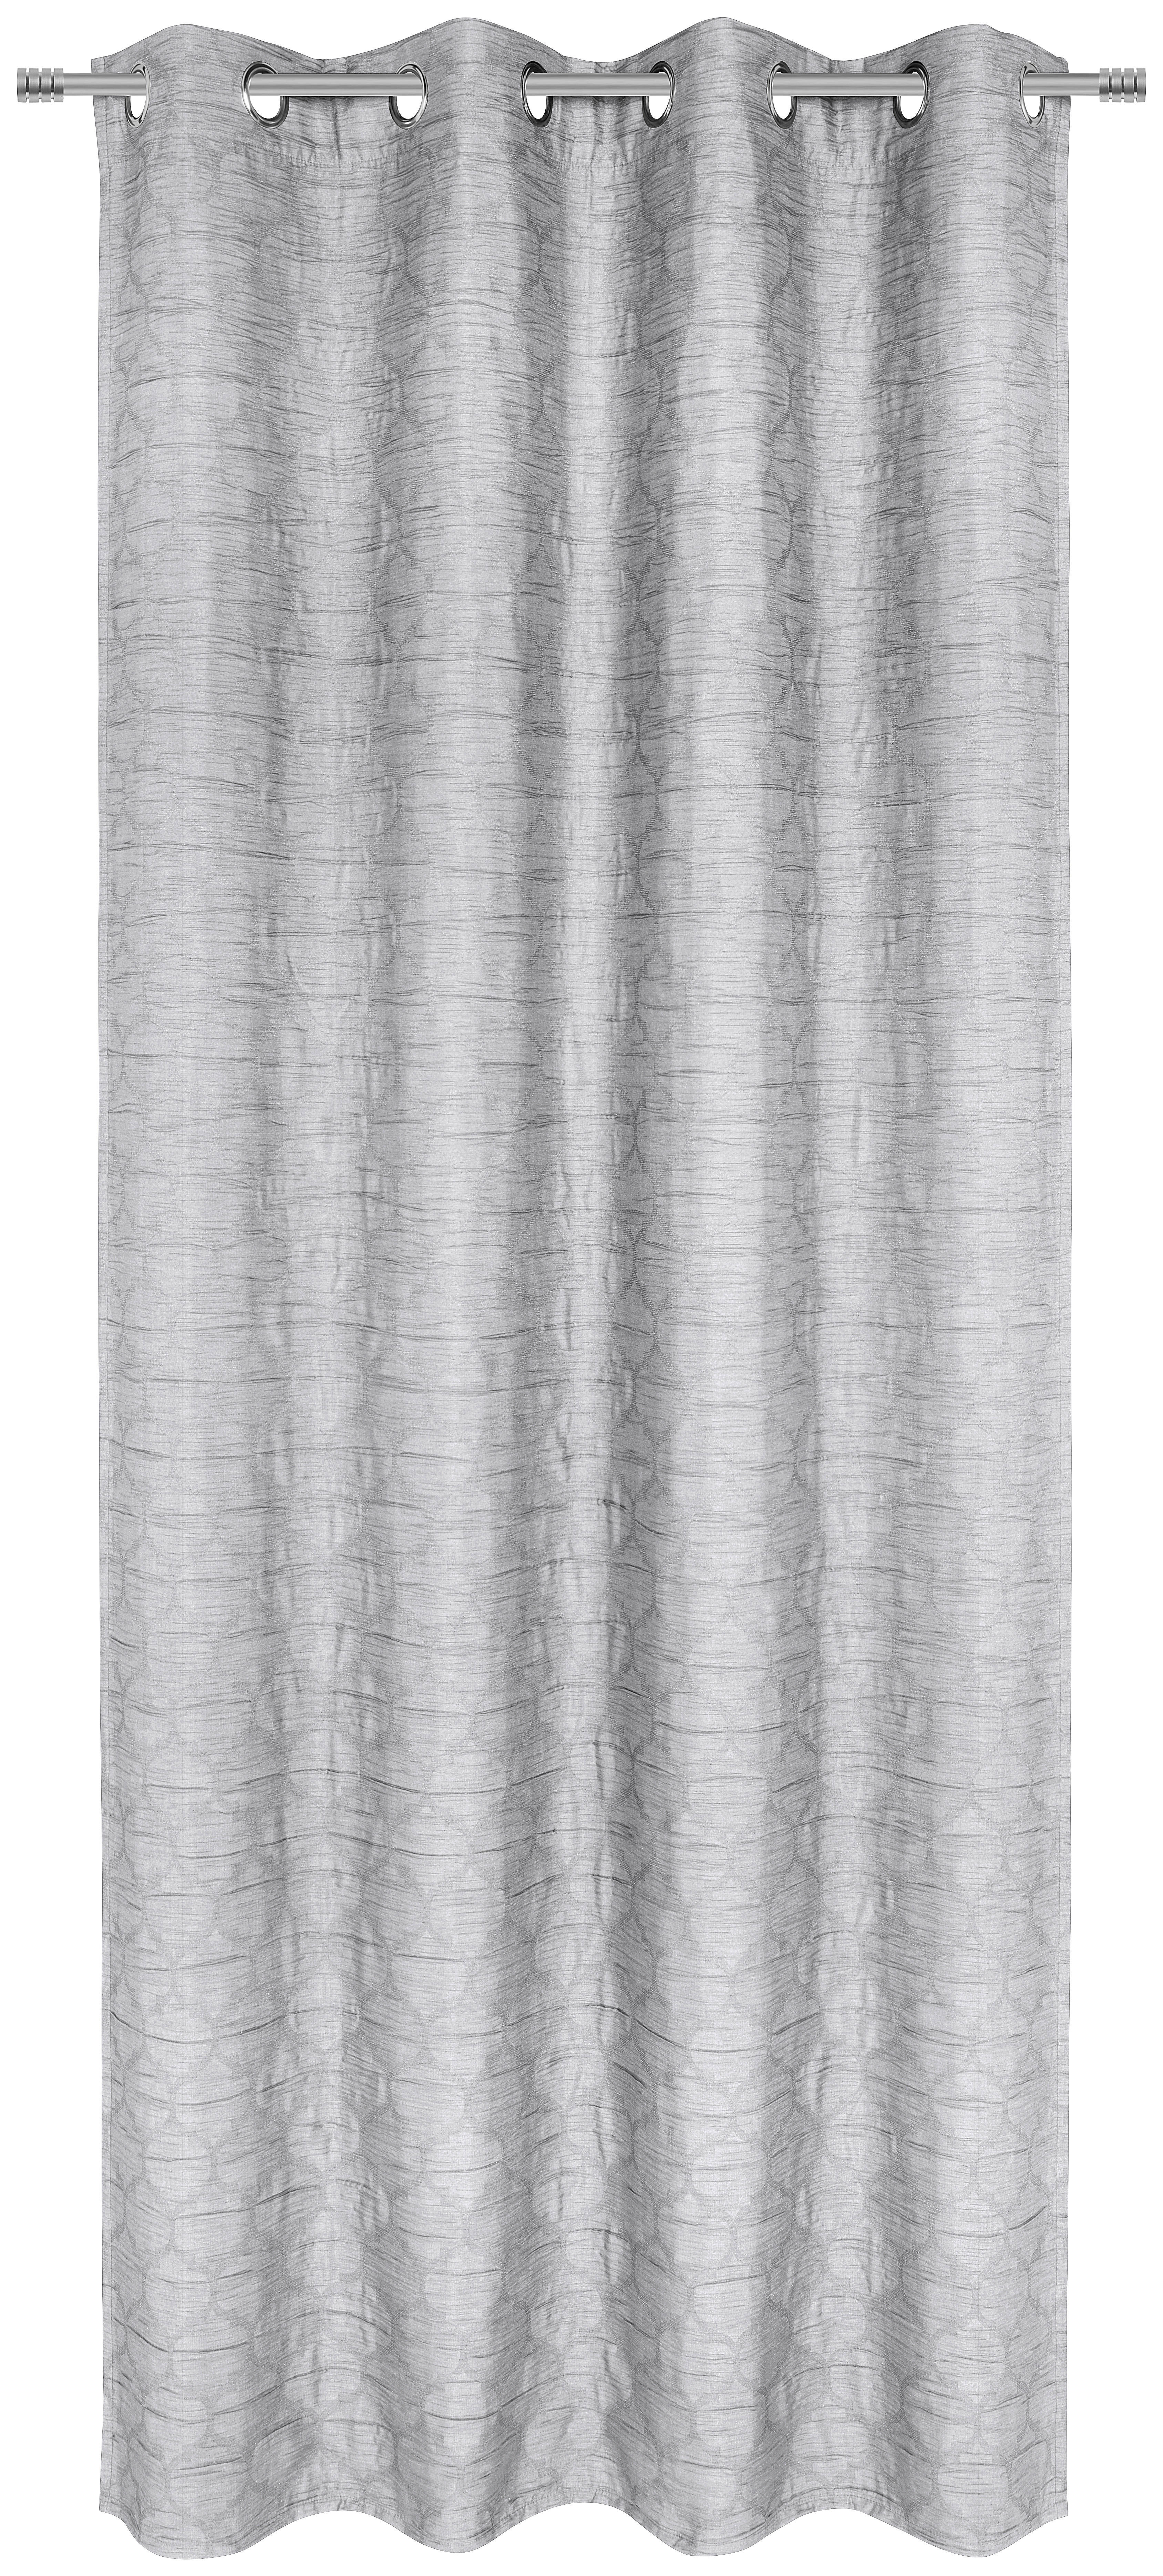 ÖSENSCHAL black-out (lichtundurchlässig) 135/245 cm   - Silberfarben, Basics, Textil (135/245cm) - Esposa